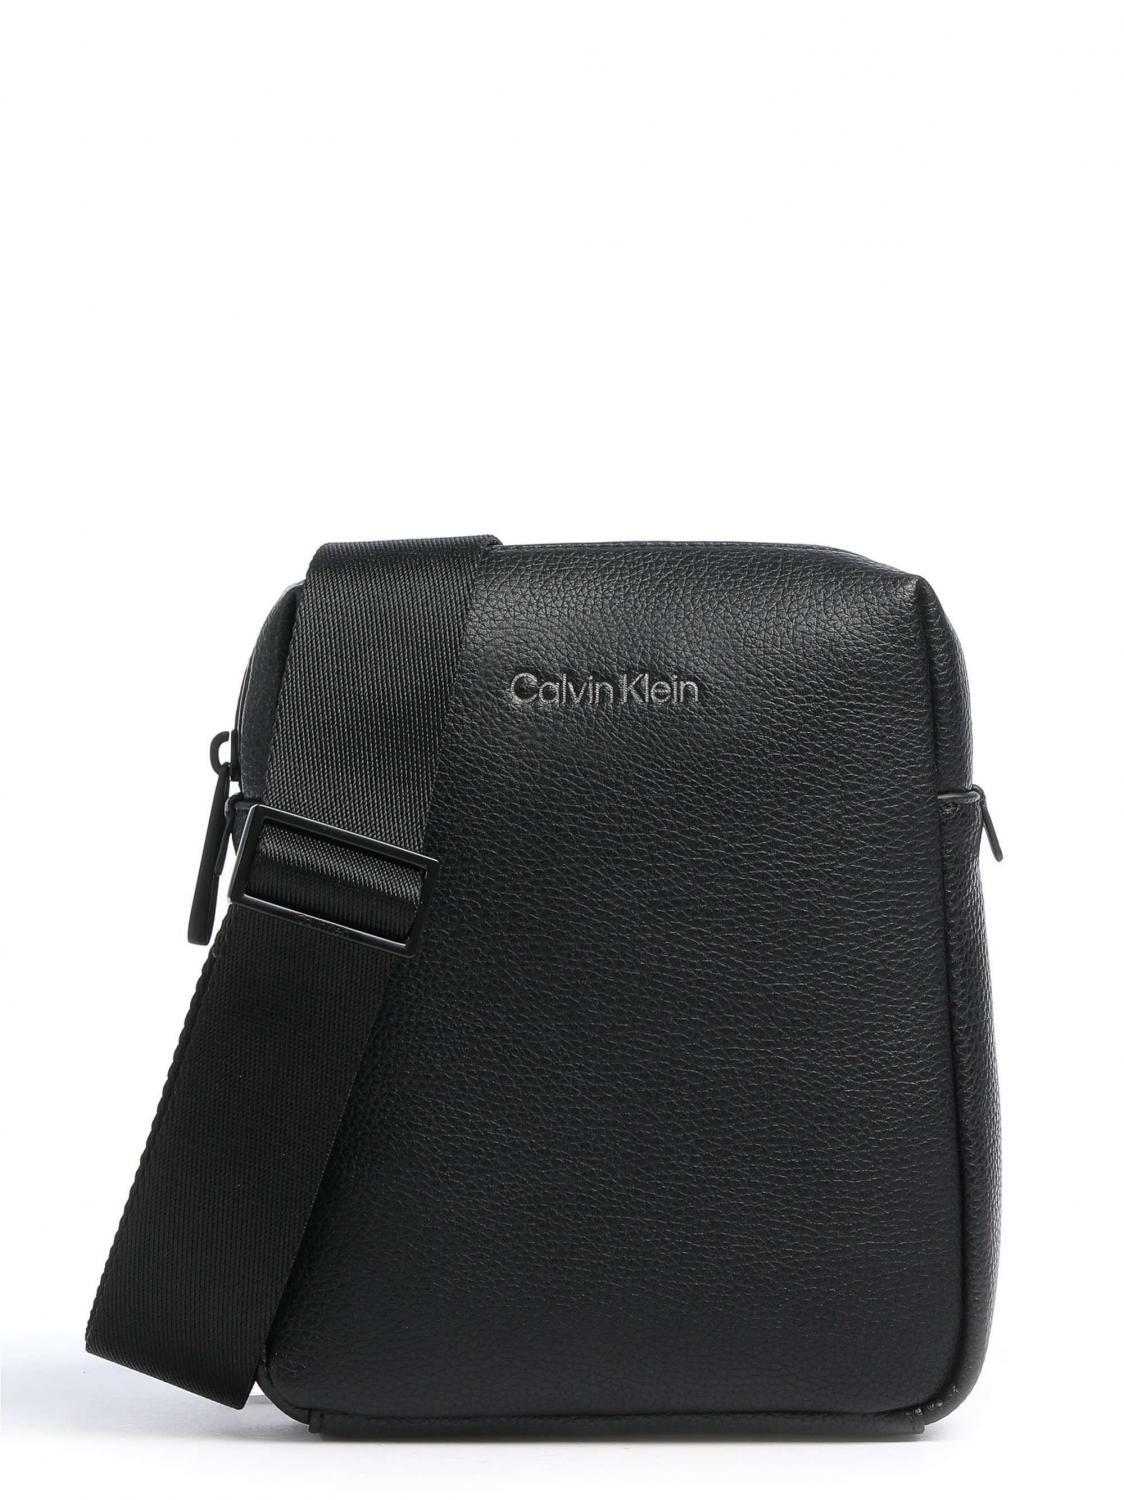 Calvin Klein Ck Must Bolso Hombre - ¡Compra En Le Sac